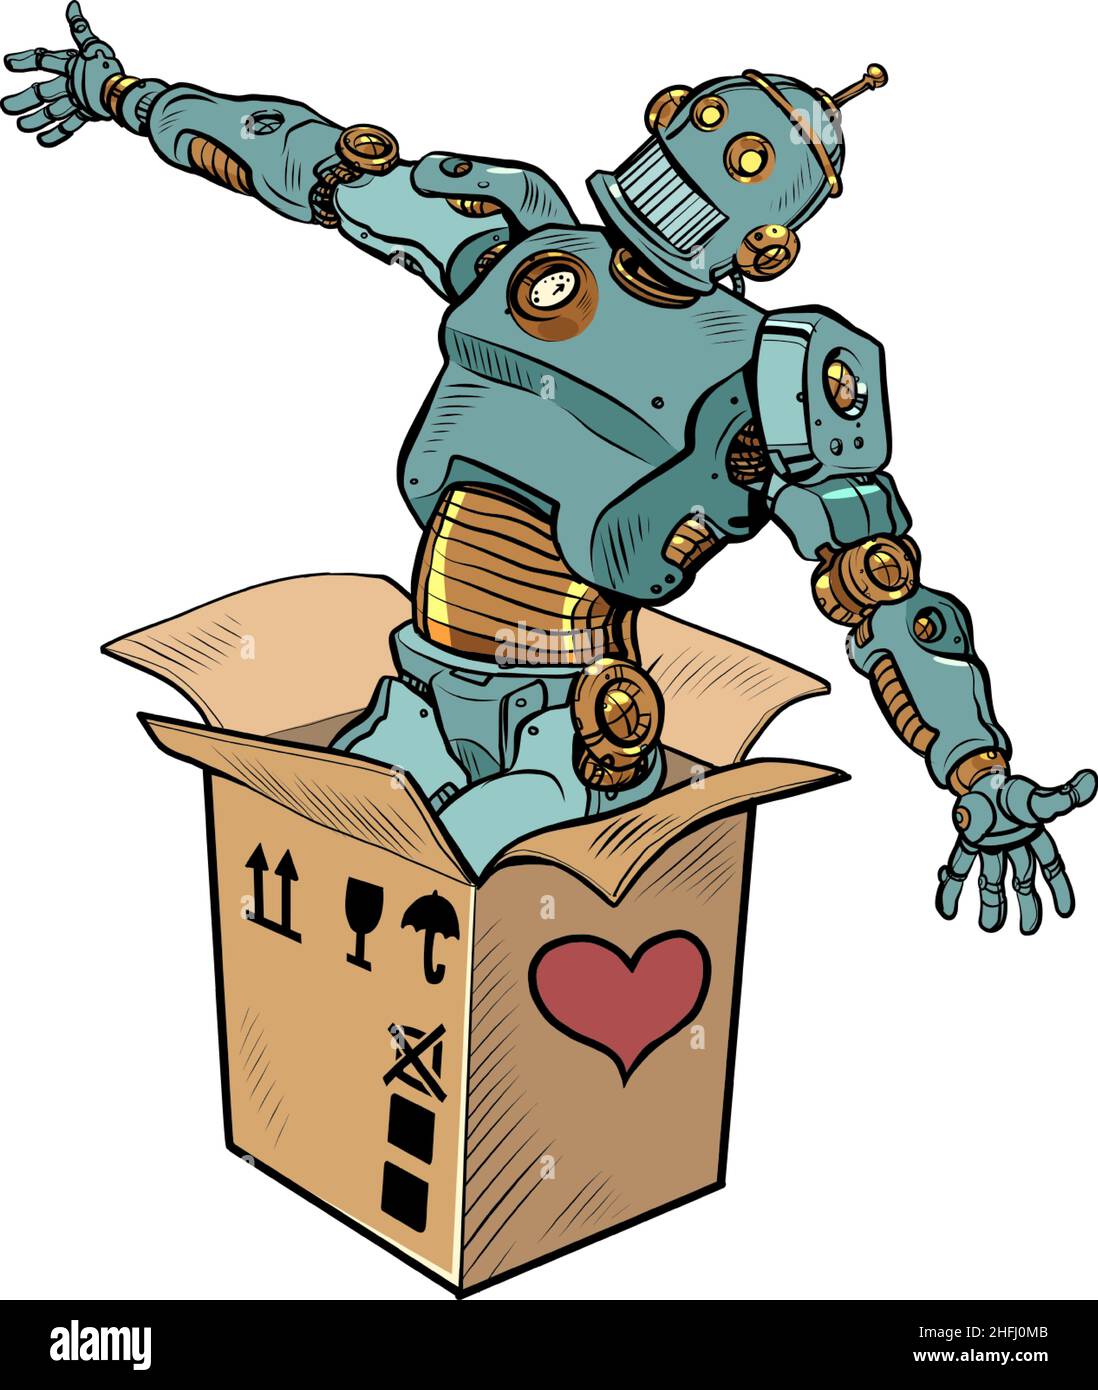 Roboter mechanische Spielzeugbox valentine Überraschungsgruß, Liebe Romantik isolieren auf einem weißen Hintergrund Stock Vektor